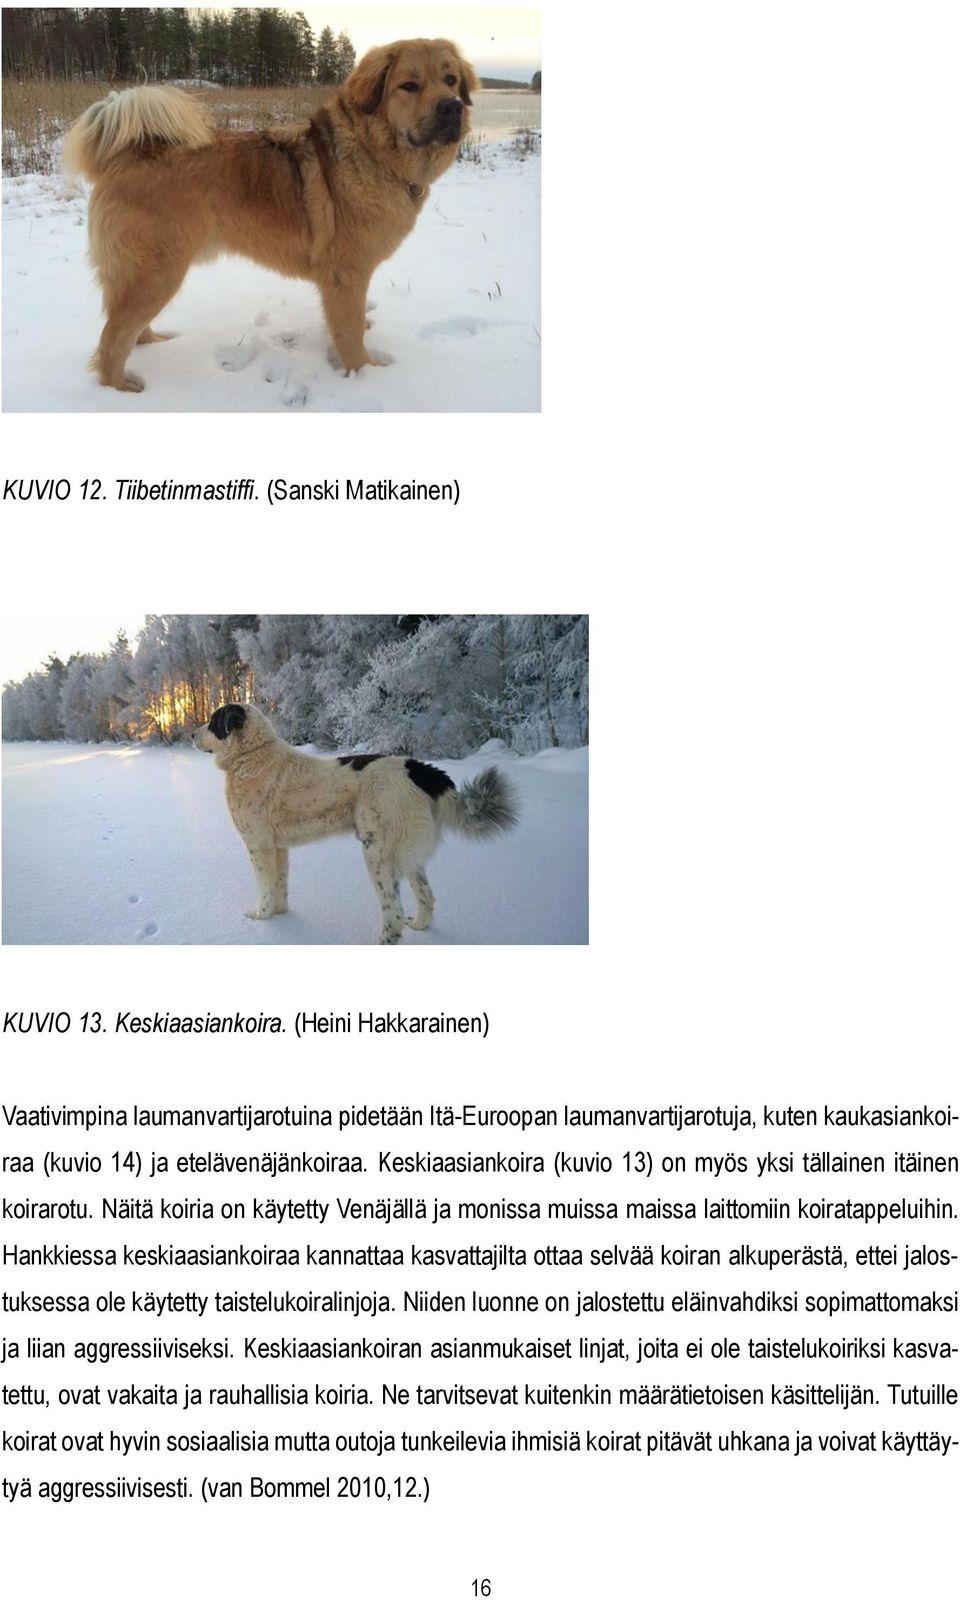 Keskiaasiankoira (kuvio 13) on myös yksi tällainen itäinen koirarotu. Näitä koiria on käytetty Venäjällä ja monissa muissa maissa laittomiin koiratappeluihin.